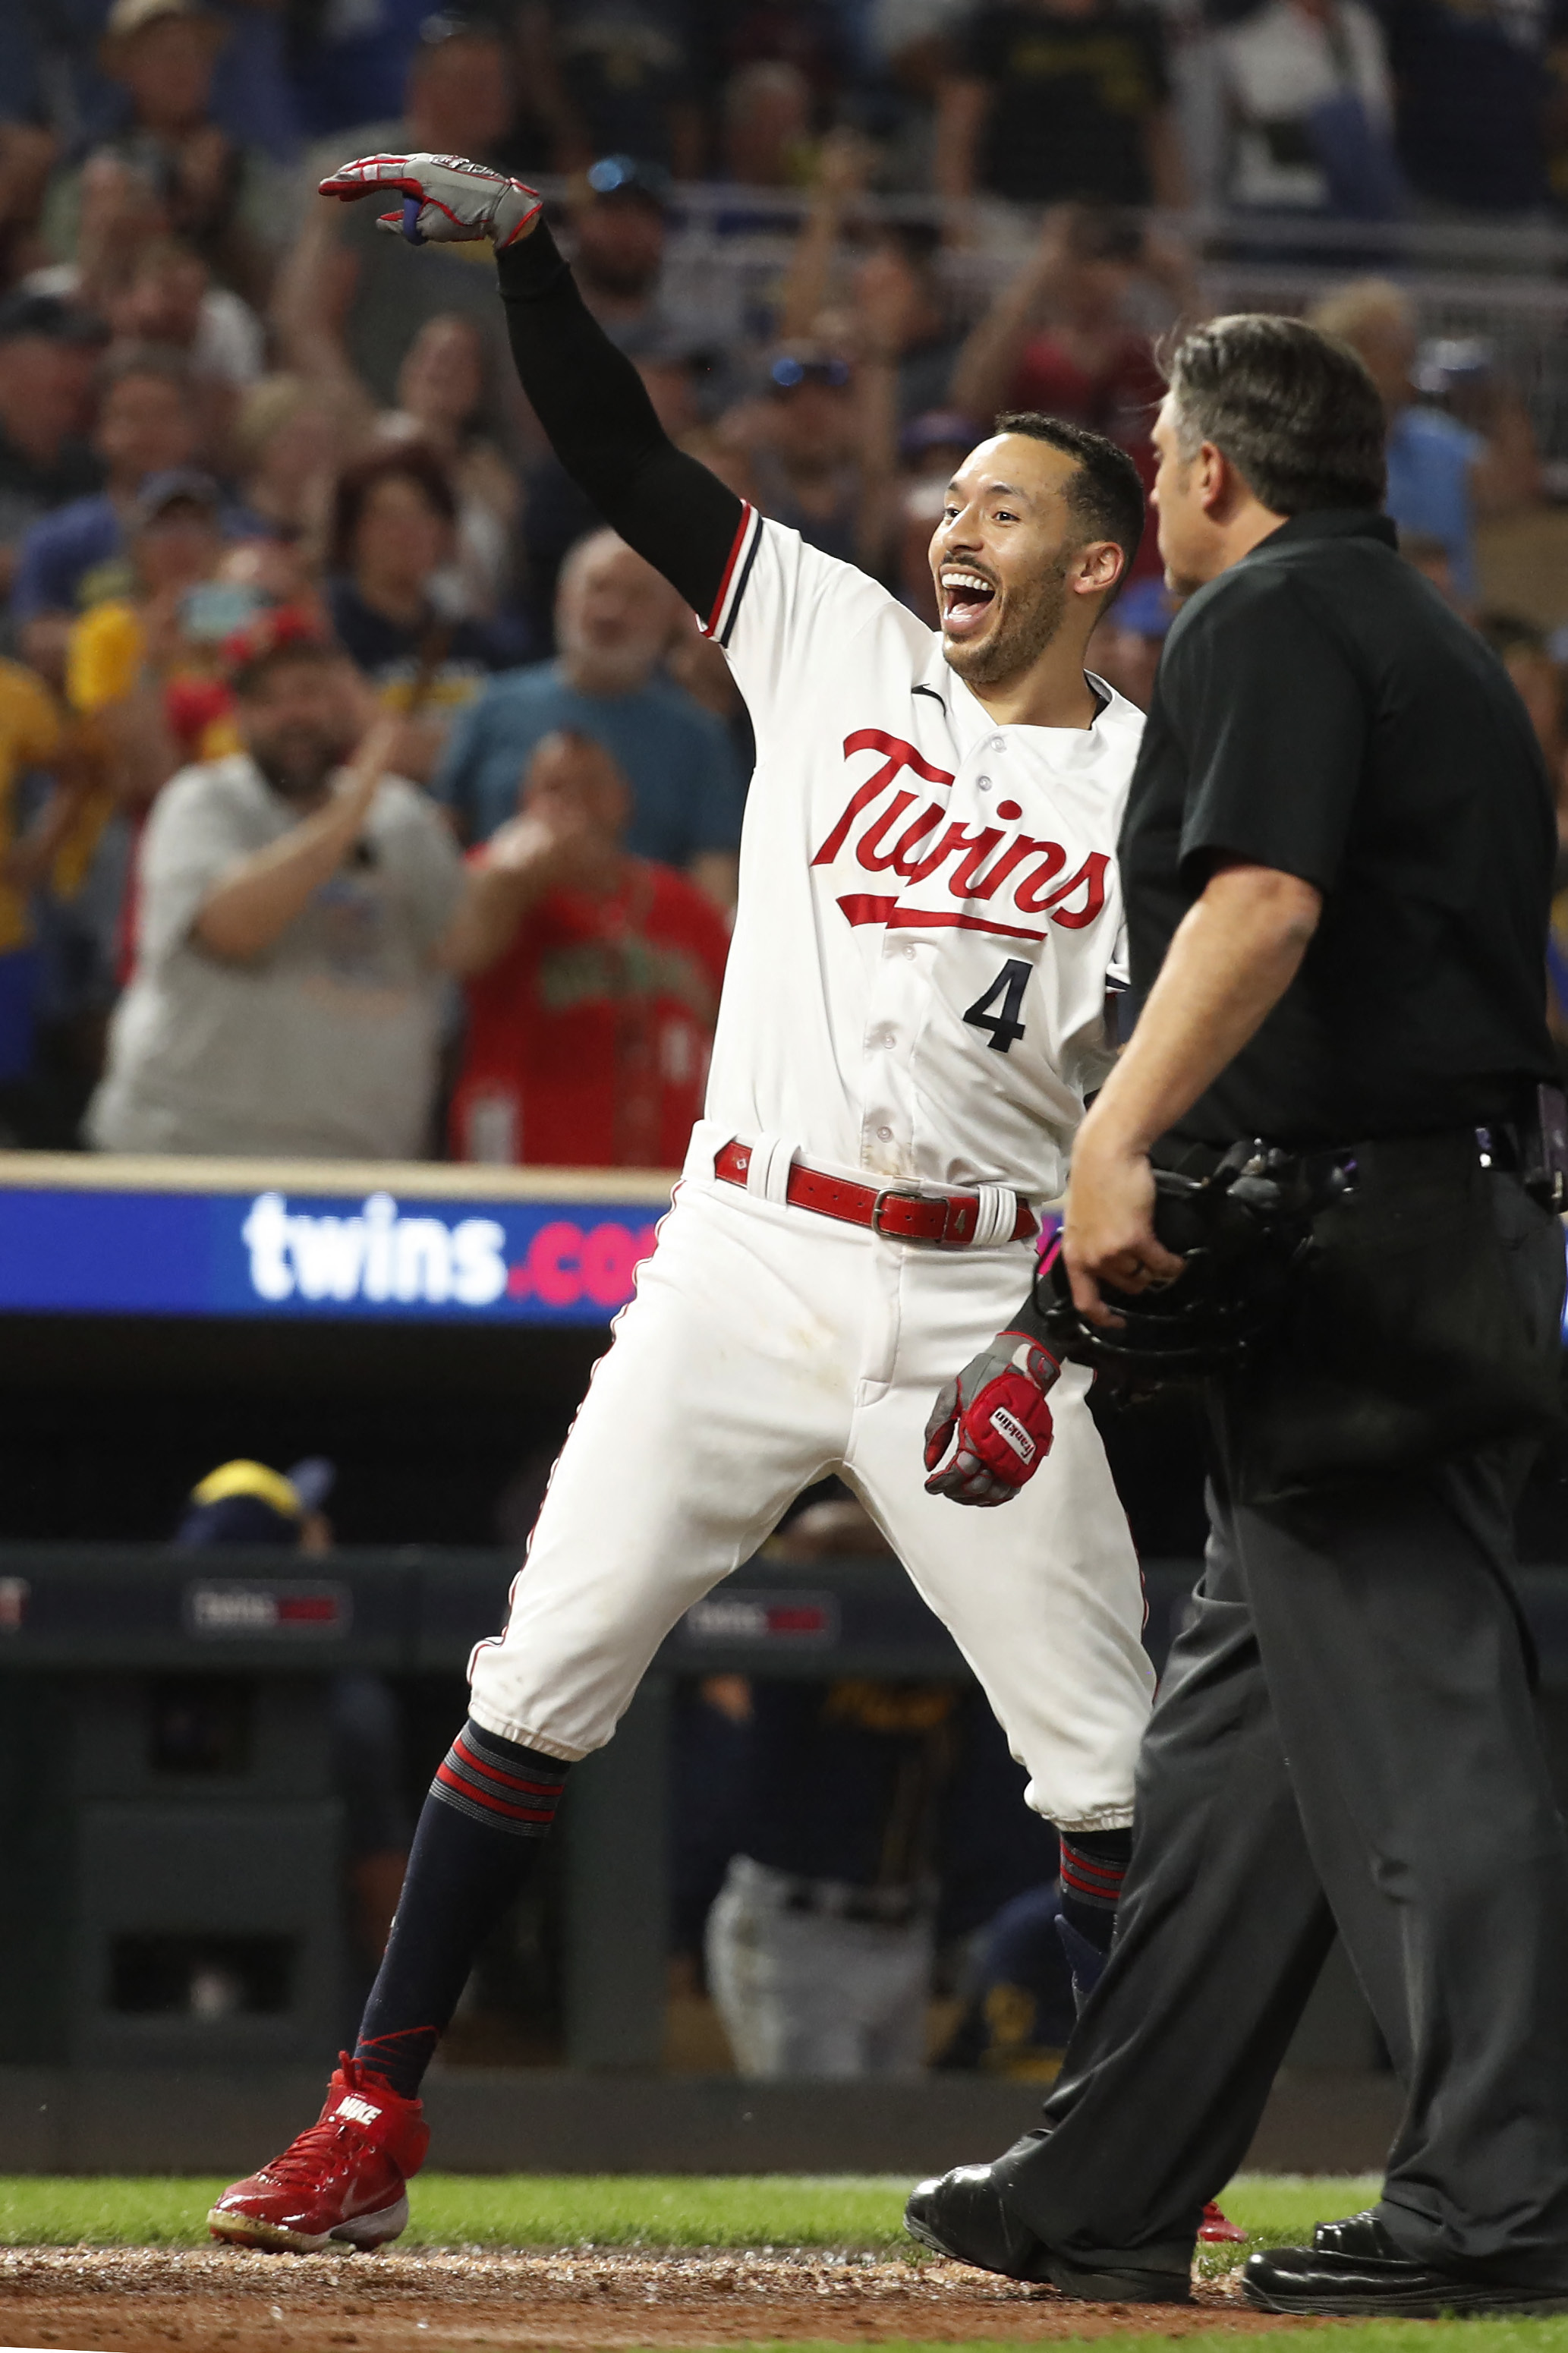 Carlos Correa's walk-off home run caps four-run rally as Twins